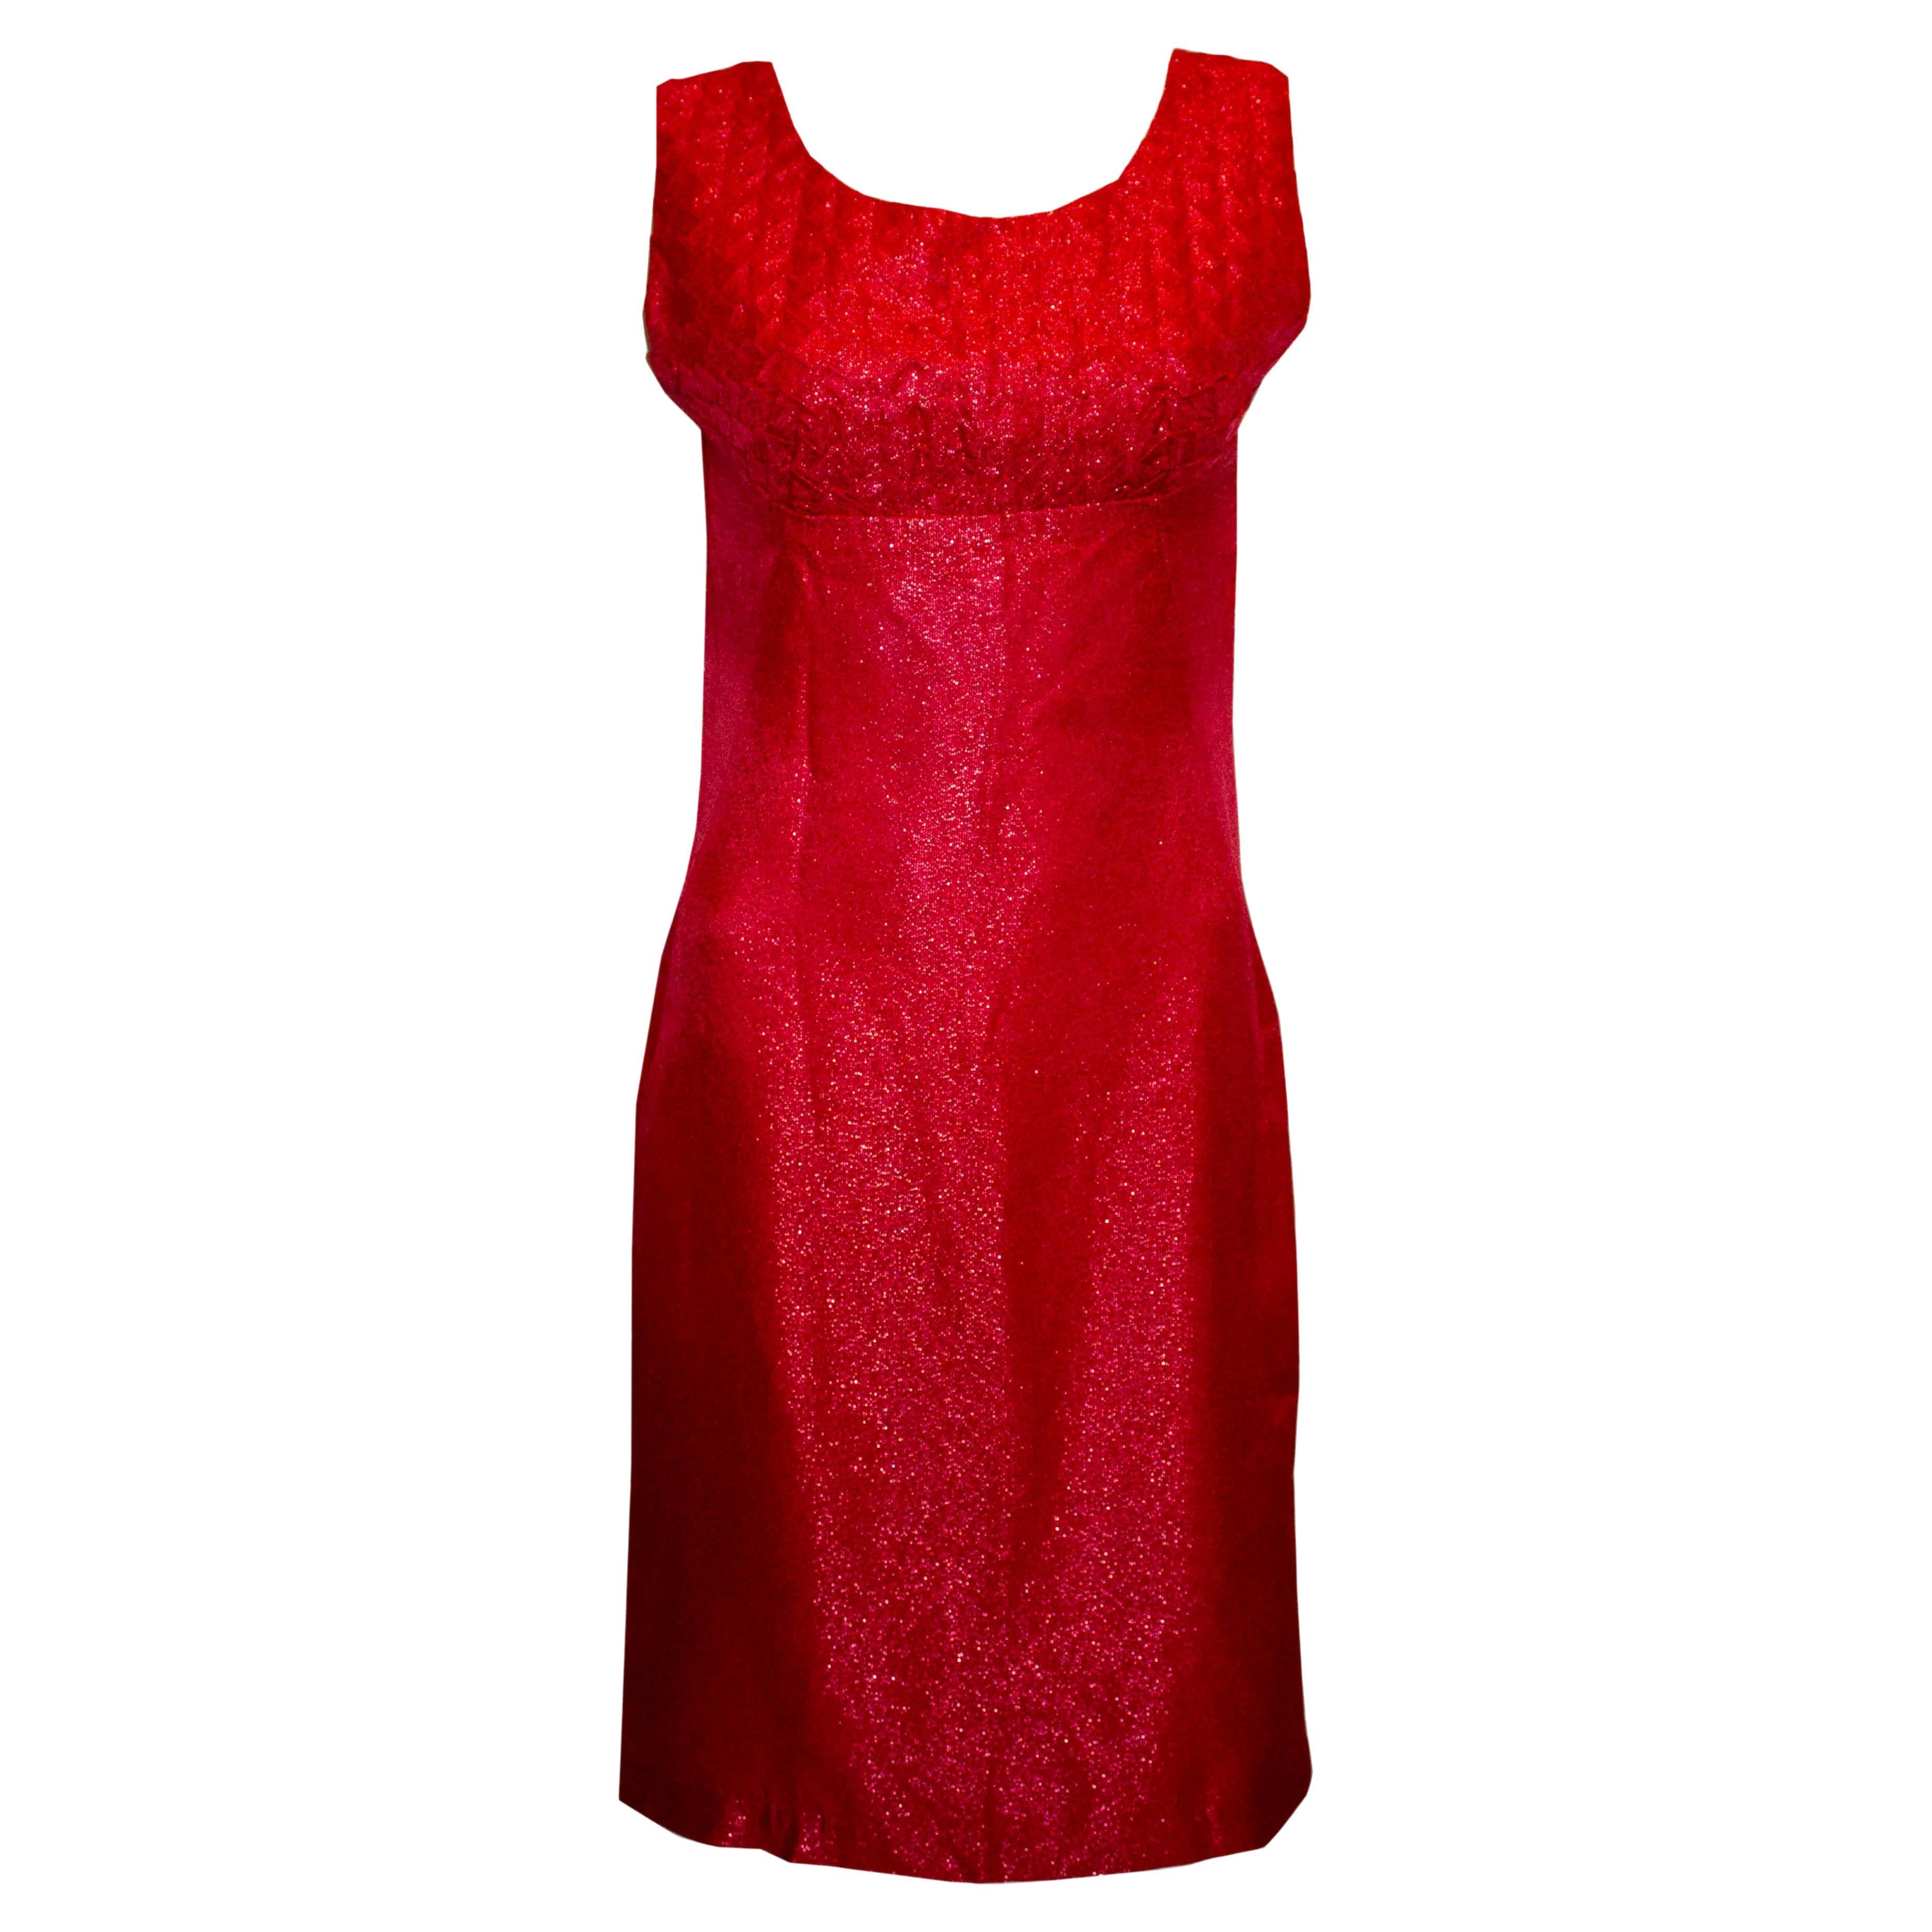 Vintage Red Cocktail Dress For Sale